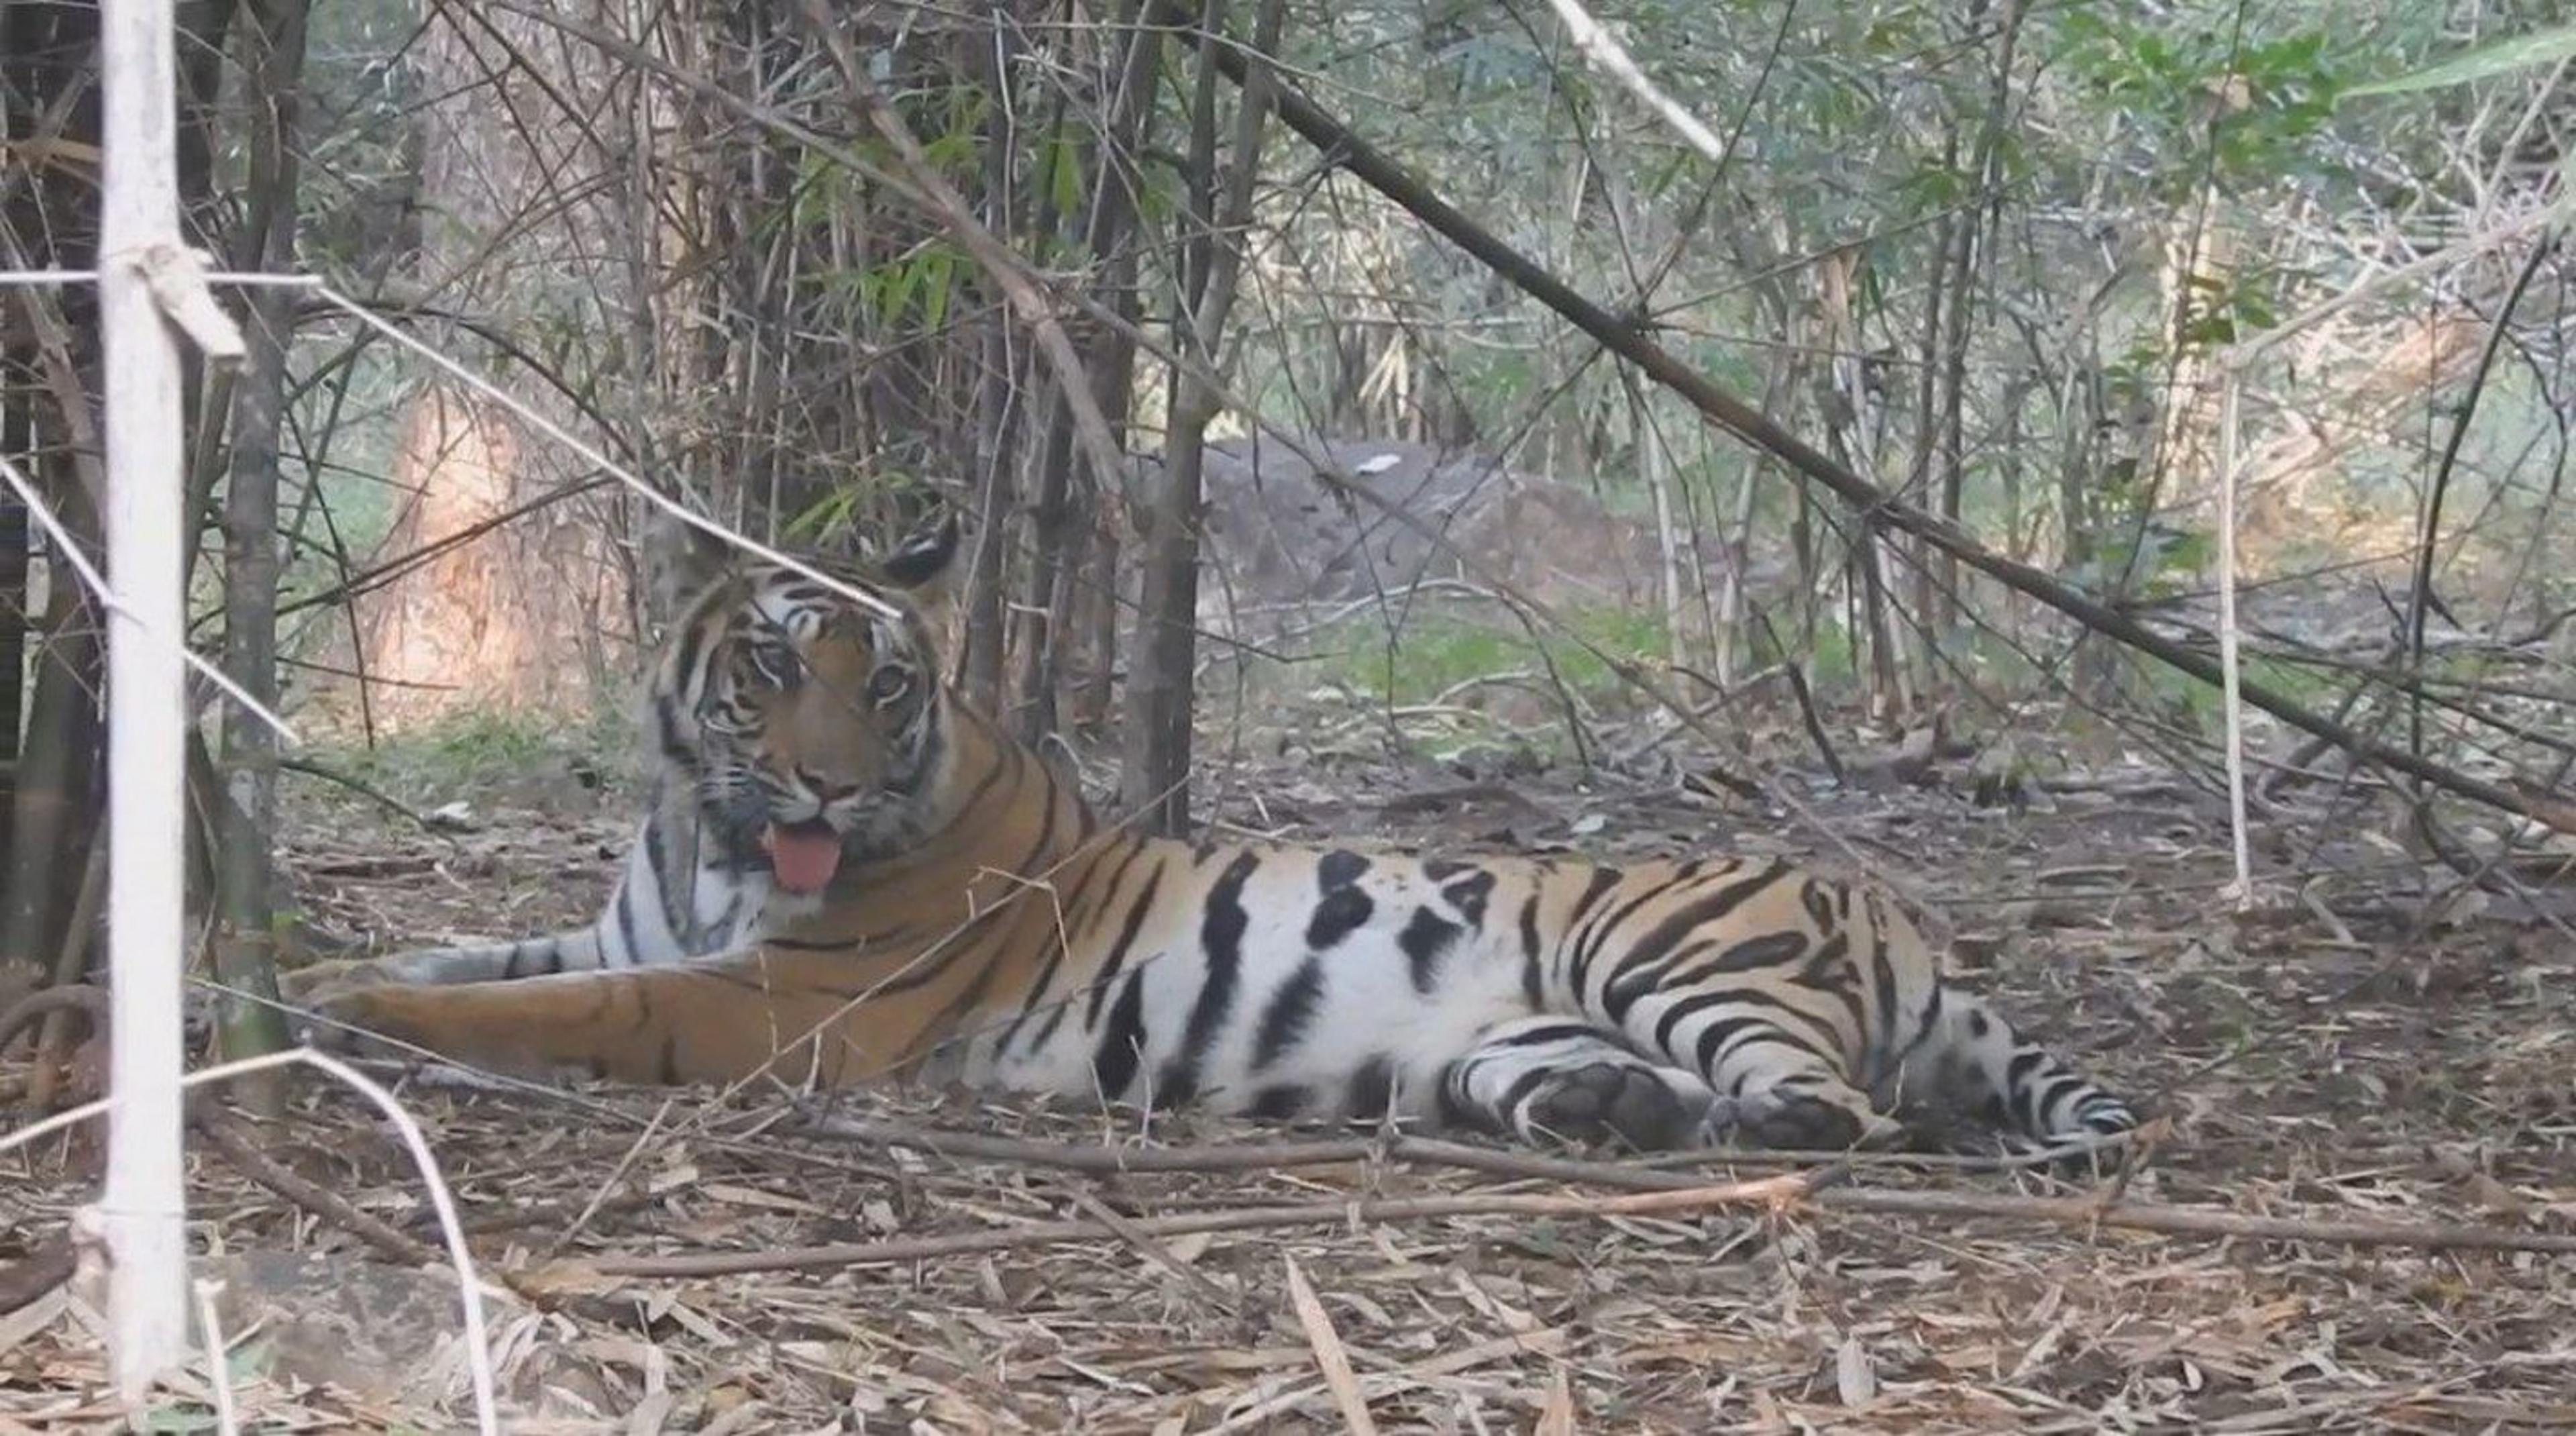 बांधवगढ़ की मादा बाघ कजरी को बाड़े में रखने की तैयारी, रेस्क्यू करने 5 दिन से कर रहे ट्रेस